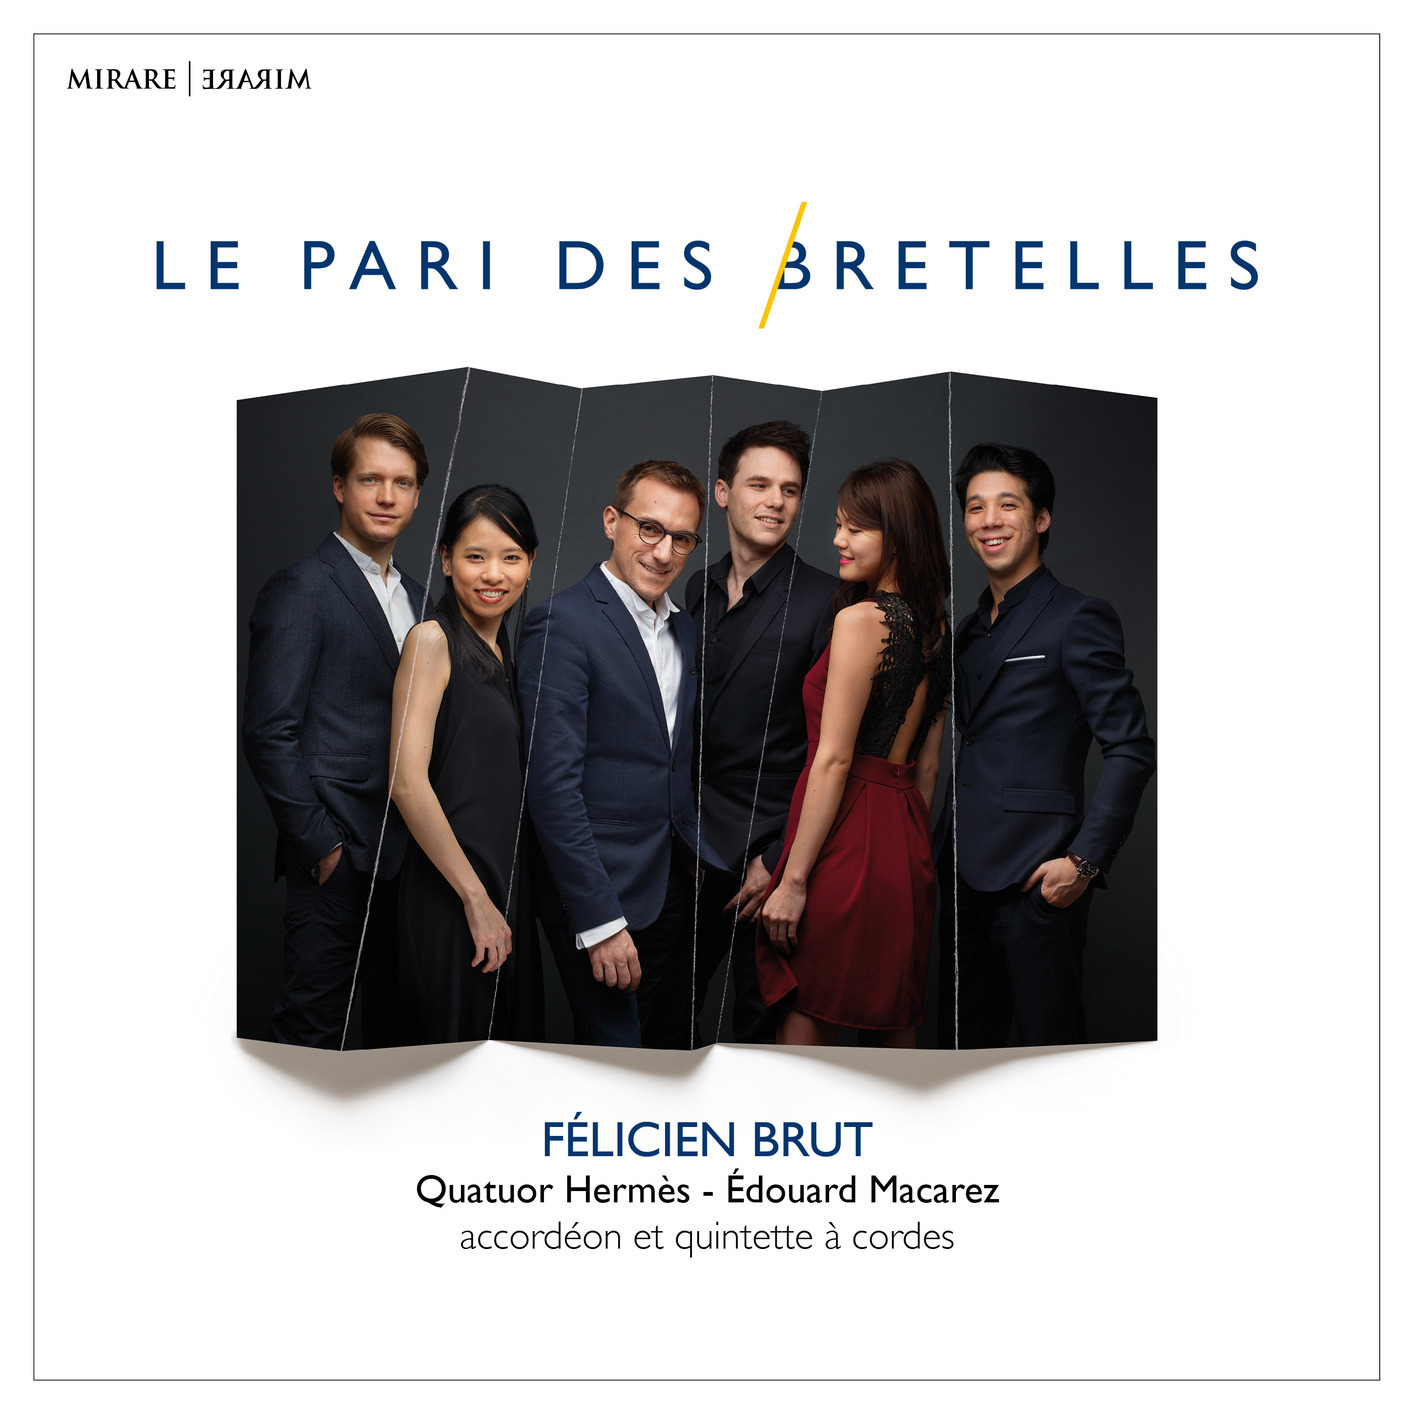 Felicien Brut & Quatuor Hermes & Edouard Macarez - Le pari des bretelles (2019) [FLAC 24bit/96kHz]